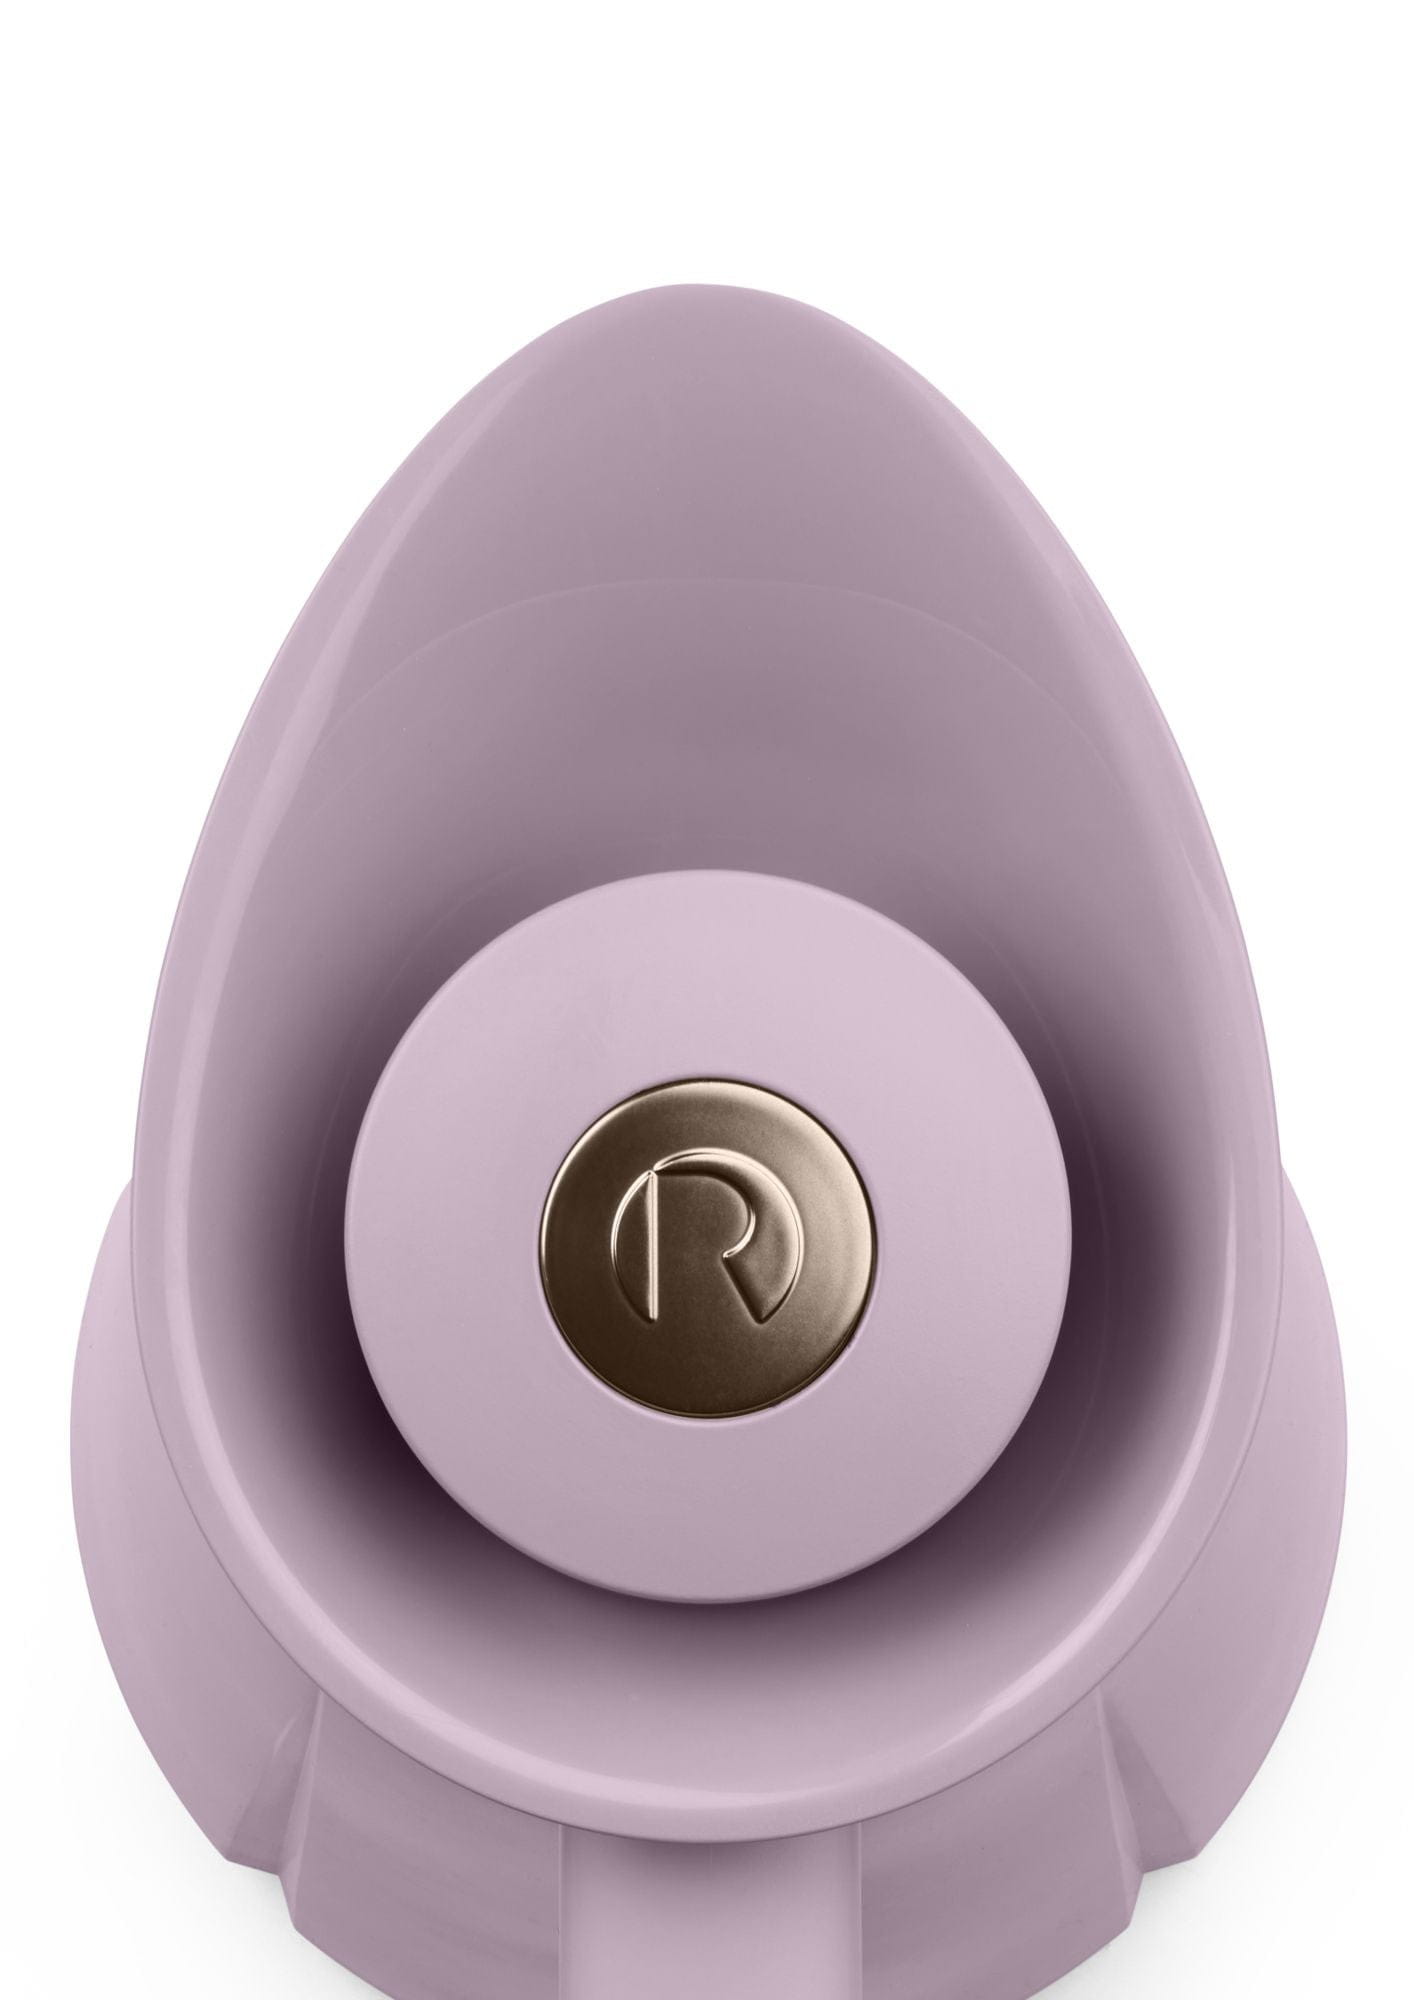 Rosendahl GC真空作为1 L，紫色